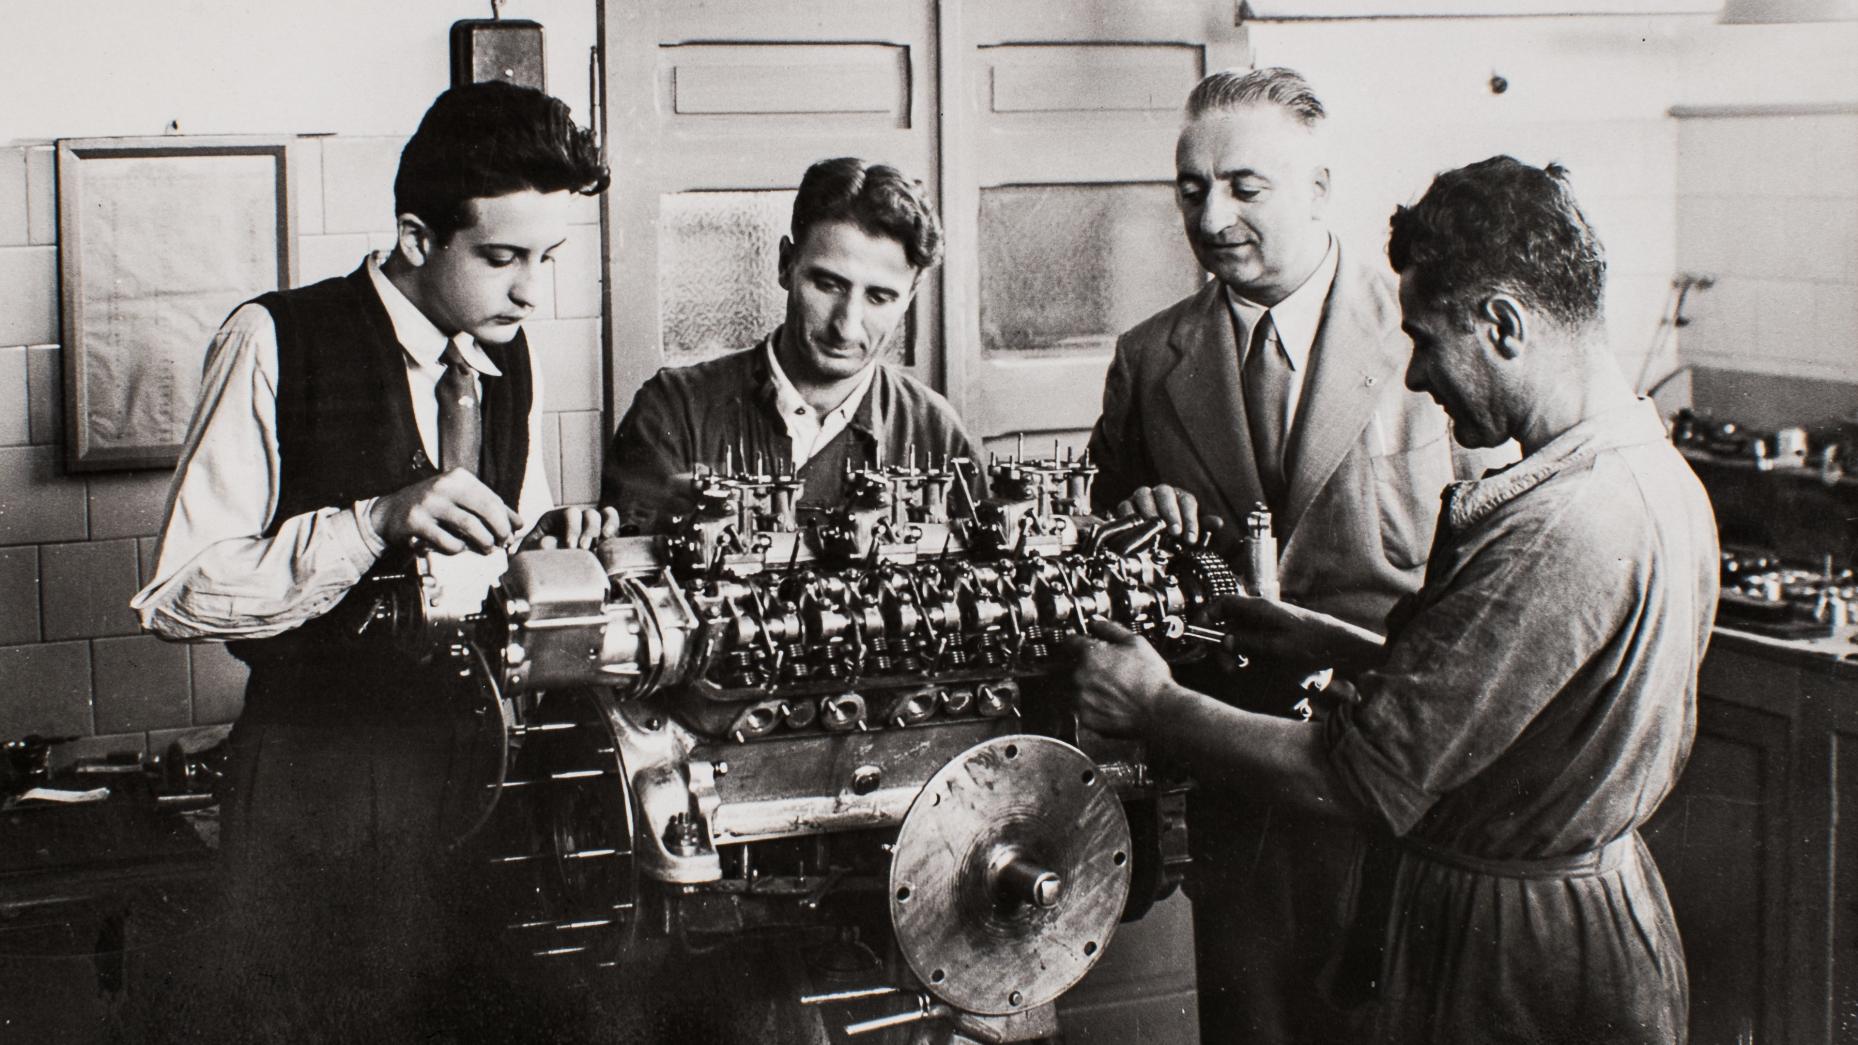 Enzo Ferrari et ses motoristes Giuseppe Busso et Gioachino Colombo à la fin des années 40